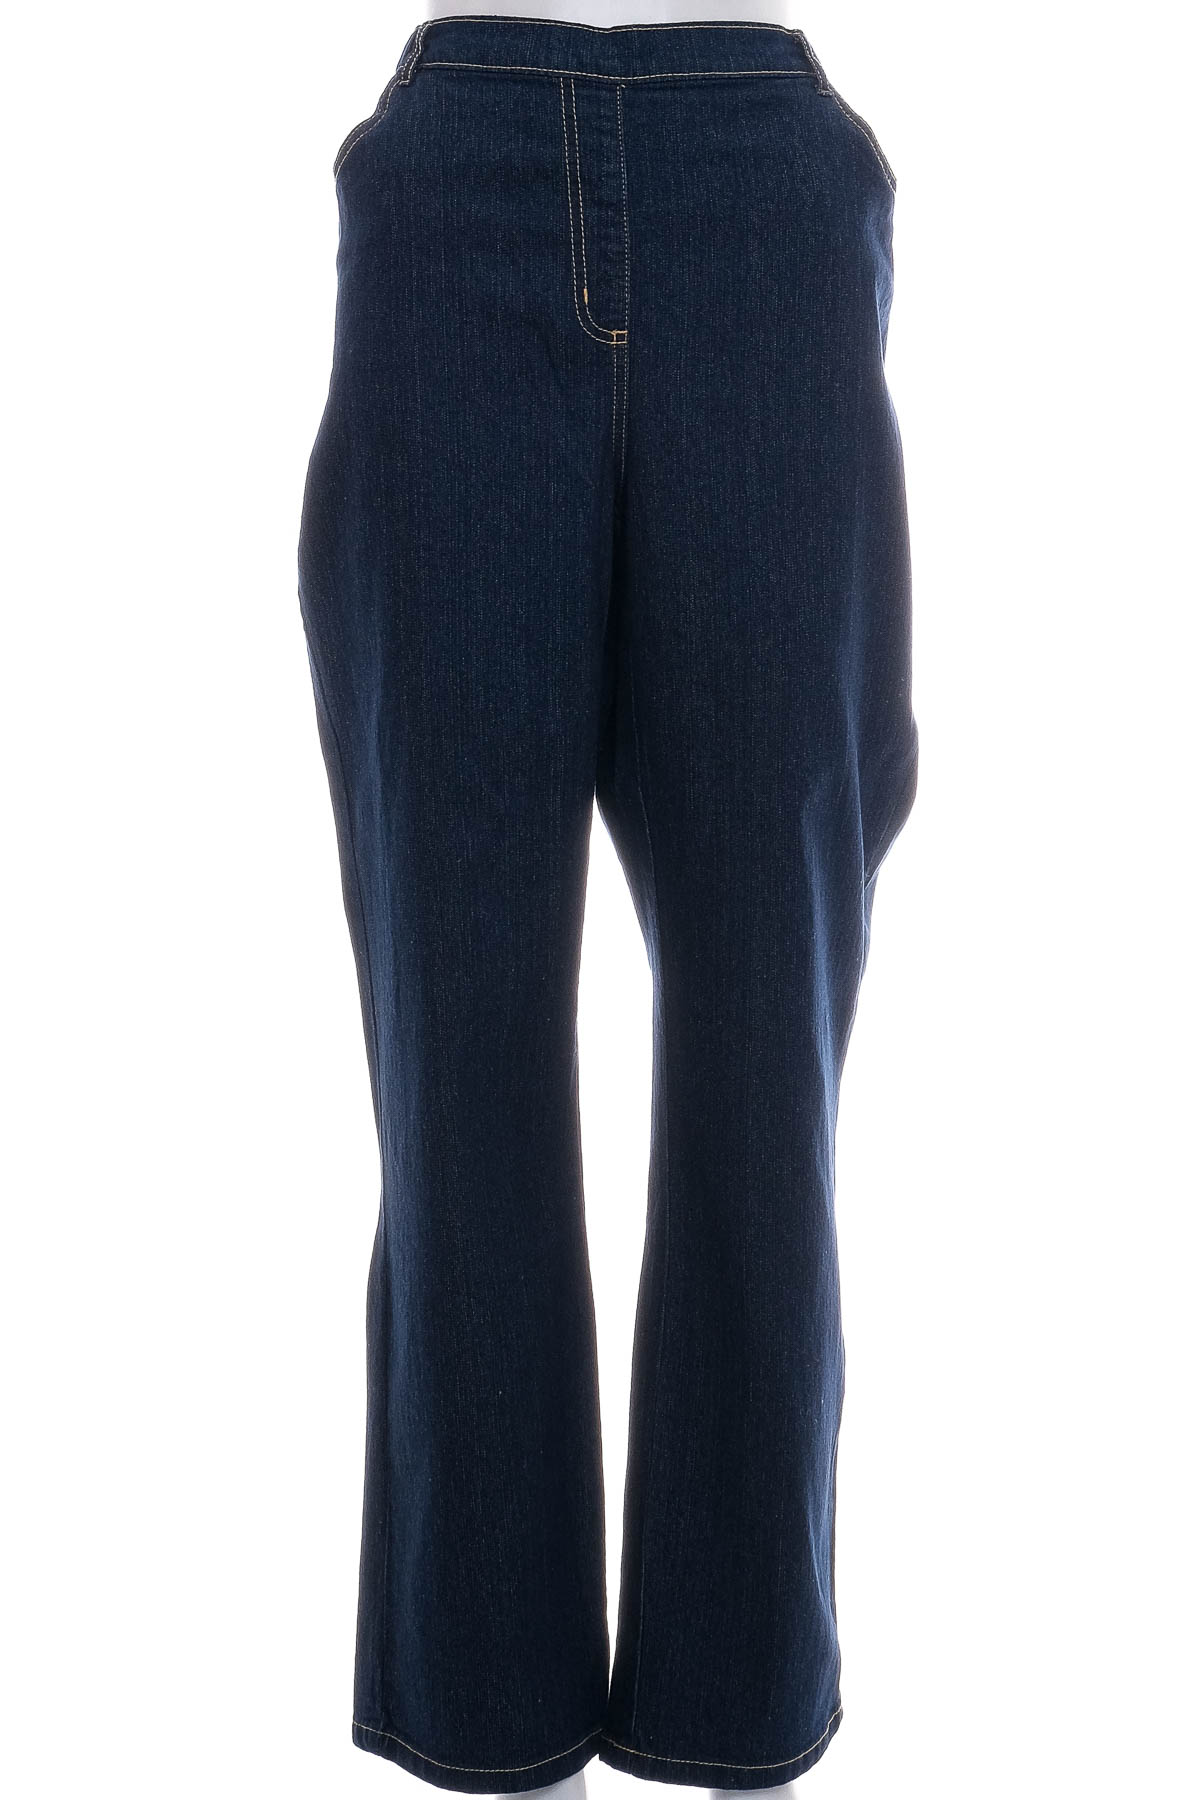 Women's jeans - AproductZ - 0